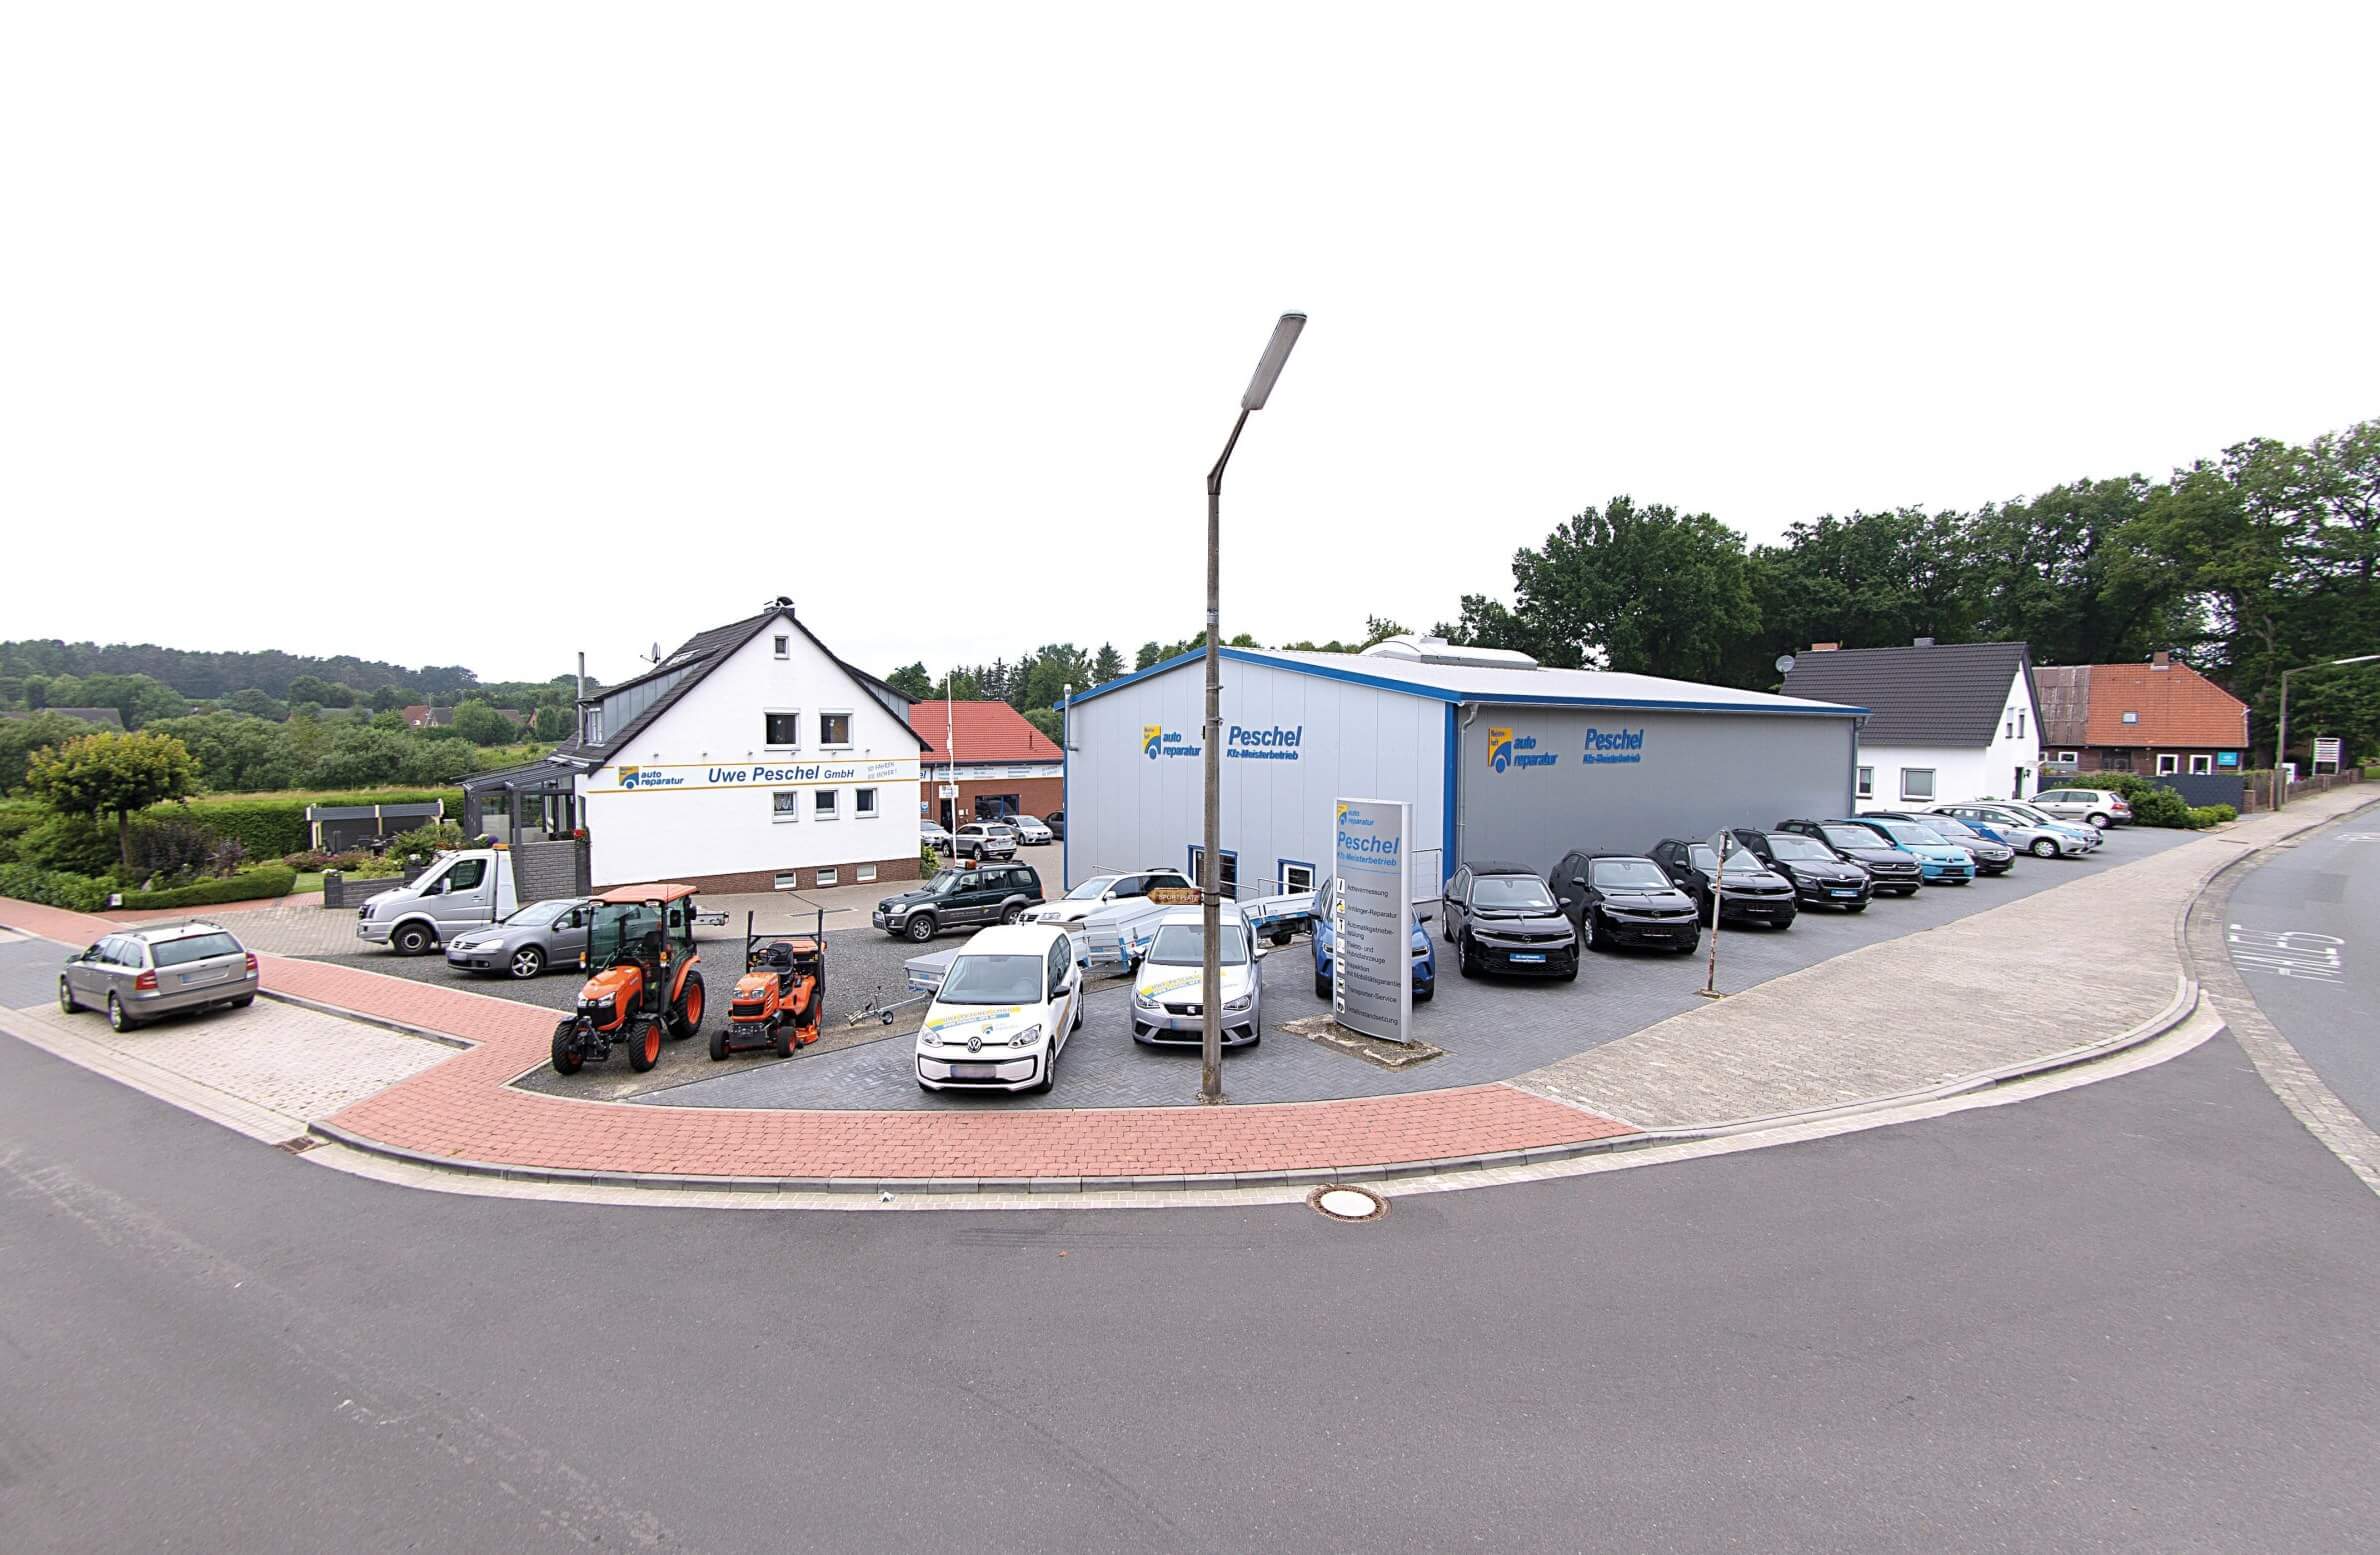 Kfz-Werkstatt und Autoreparatur Uwe Peschel GmbH in Hankensbüttel